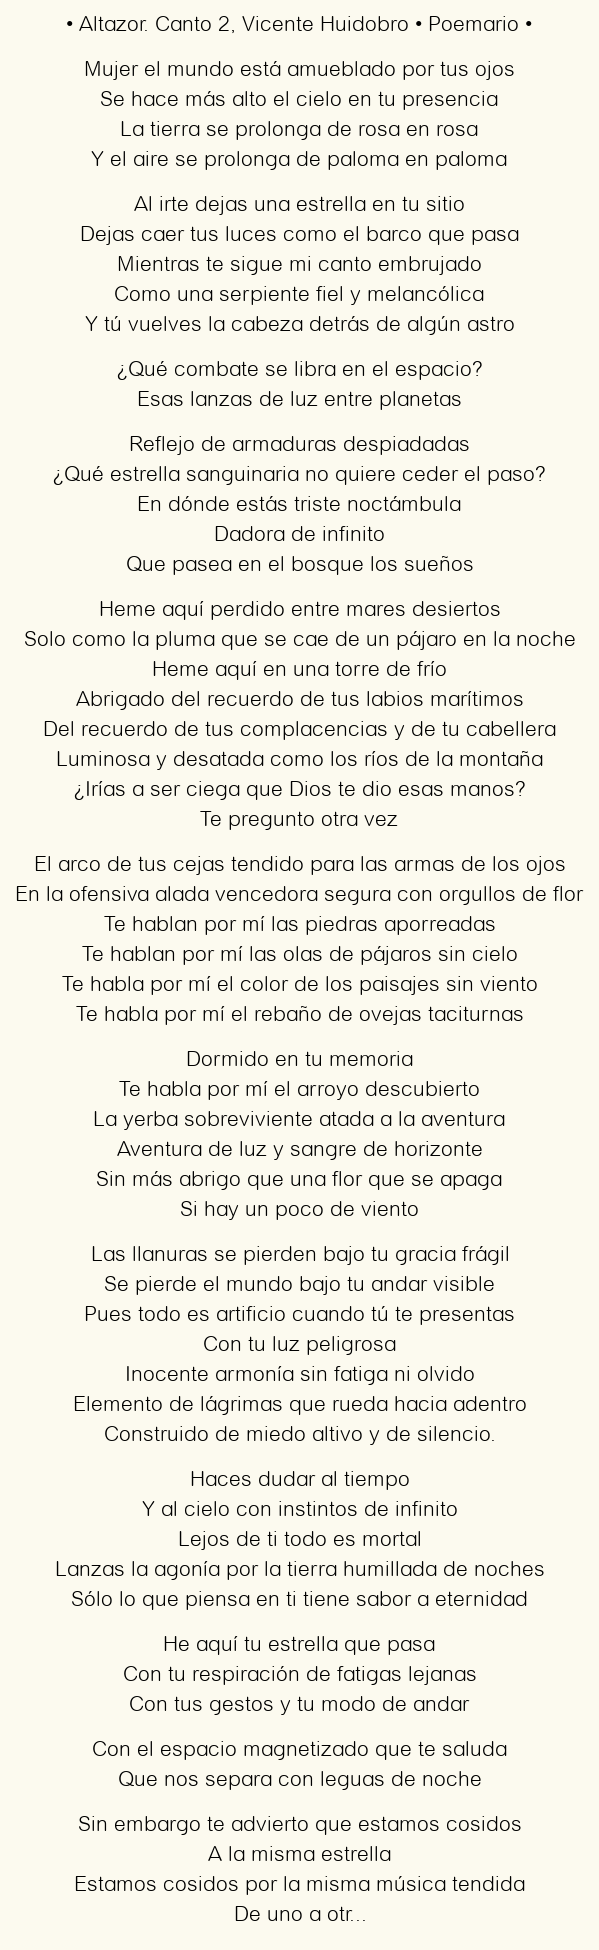 Imagen con el poema Altazor. Canto 2, por Vicente Huidobro